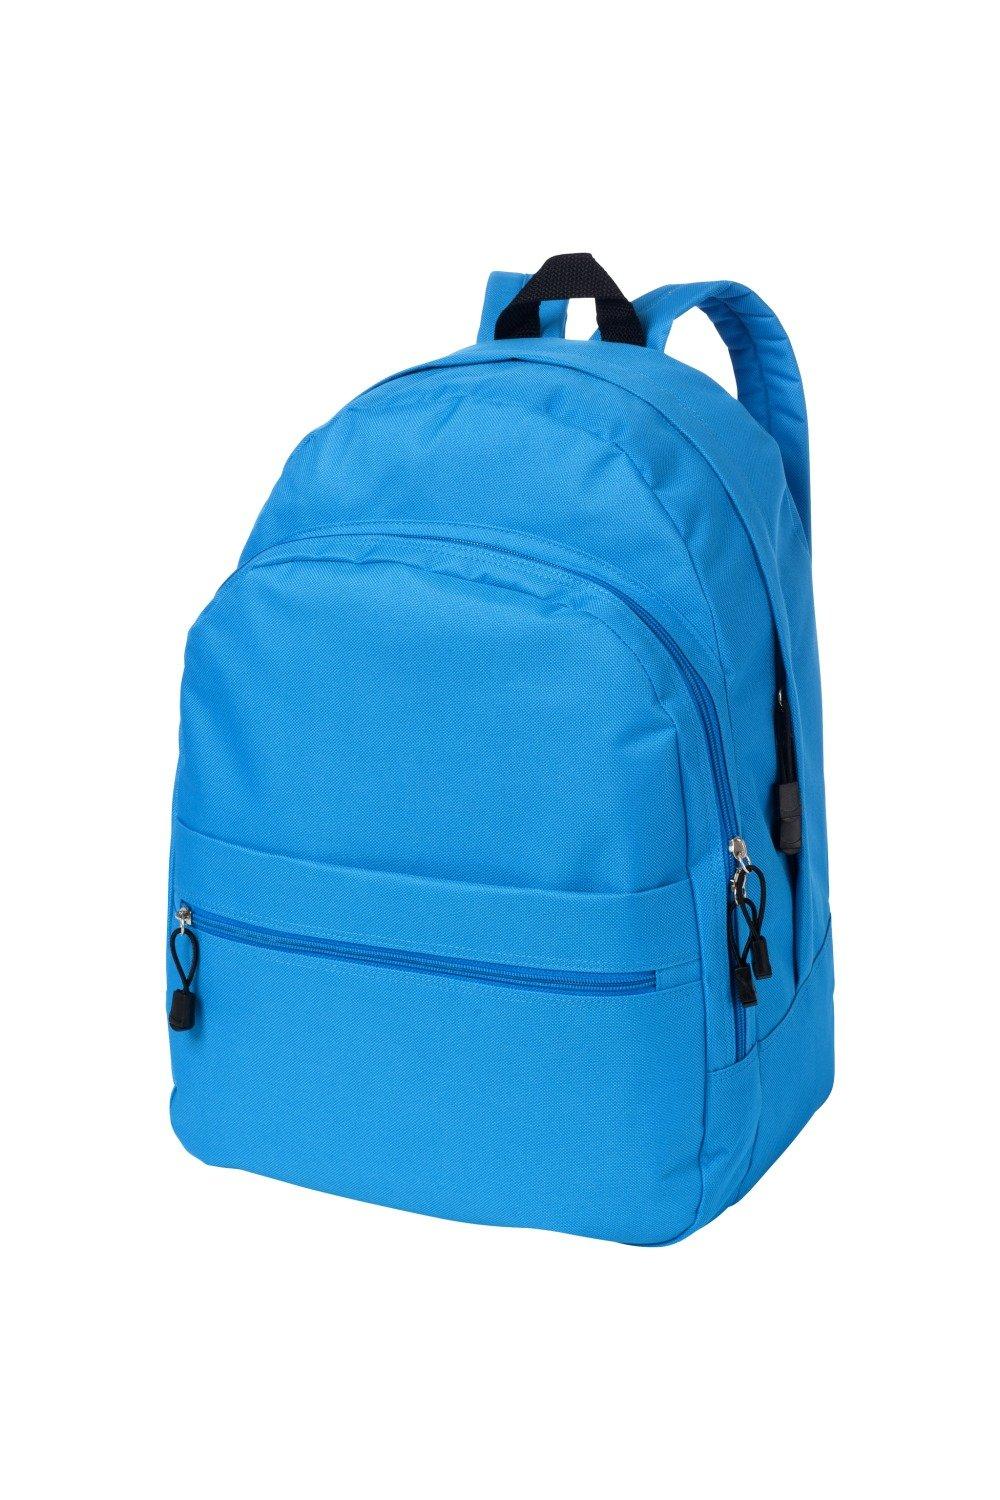 Трендовый рюкзак Bullet, синий рюкзак с карманом единорог 1 шт